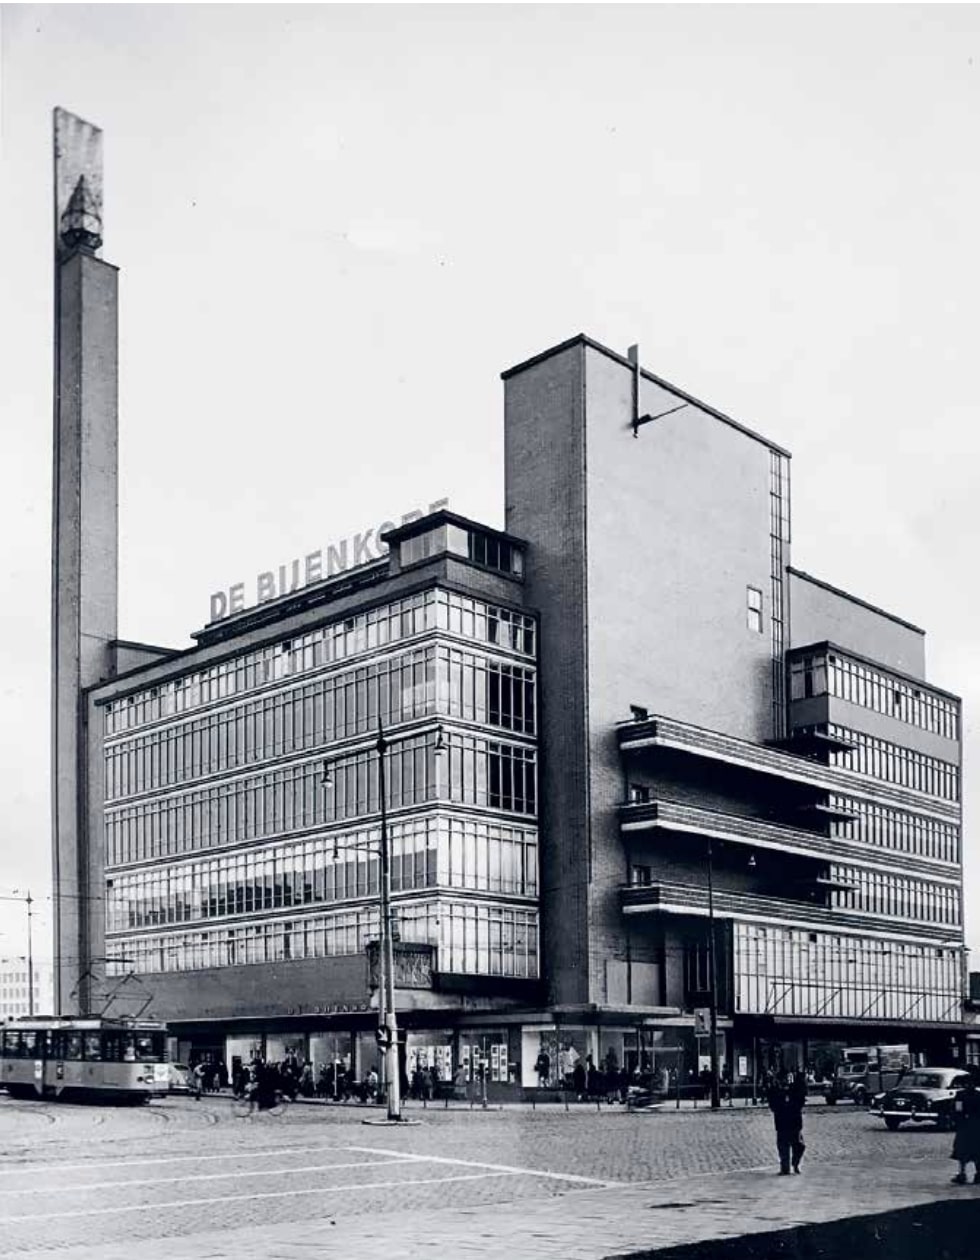 A Willem M. Dudok által tervezett, de a második világháború idején jórészt megsemmisült, később le is bontott rotterdami épület, 1930, archív fotó